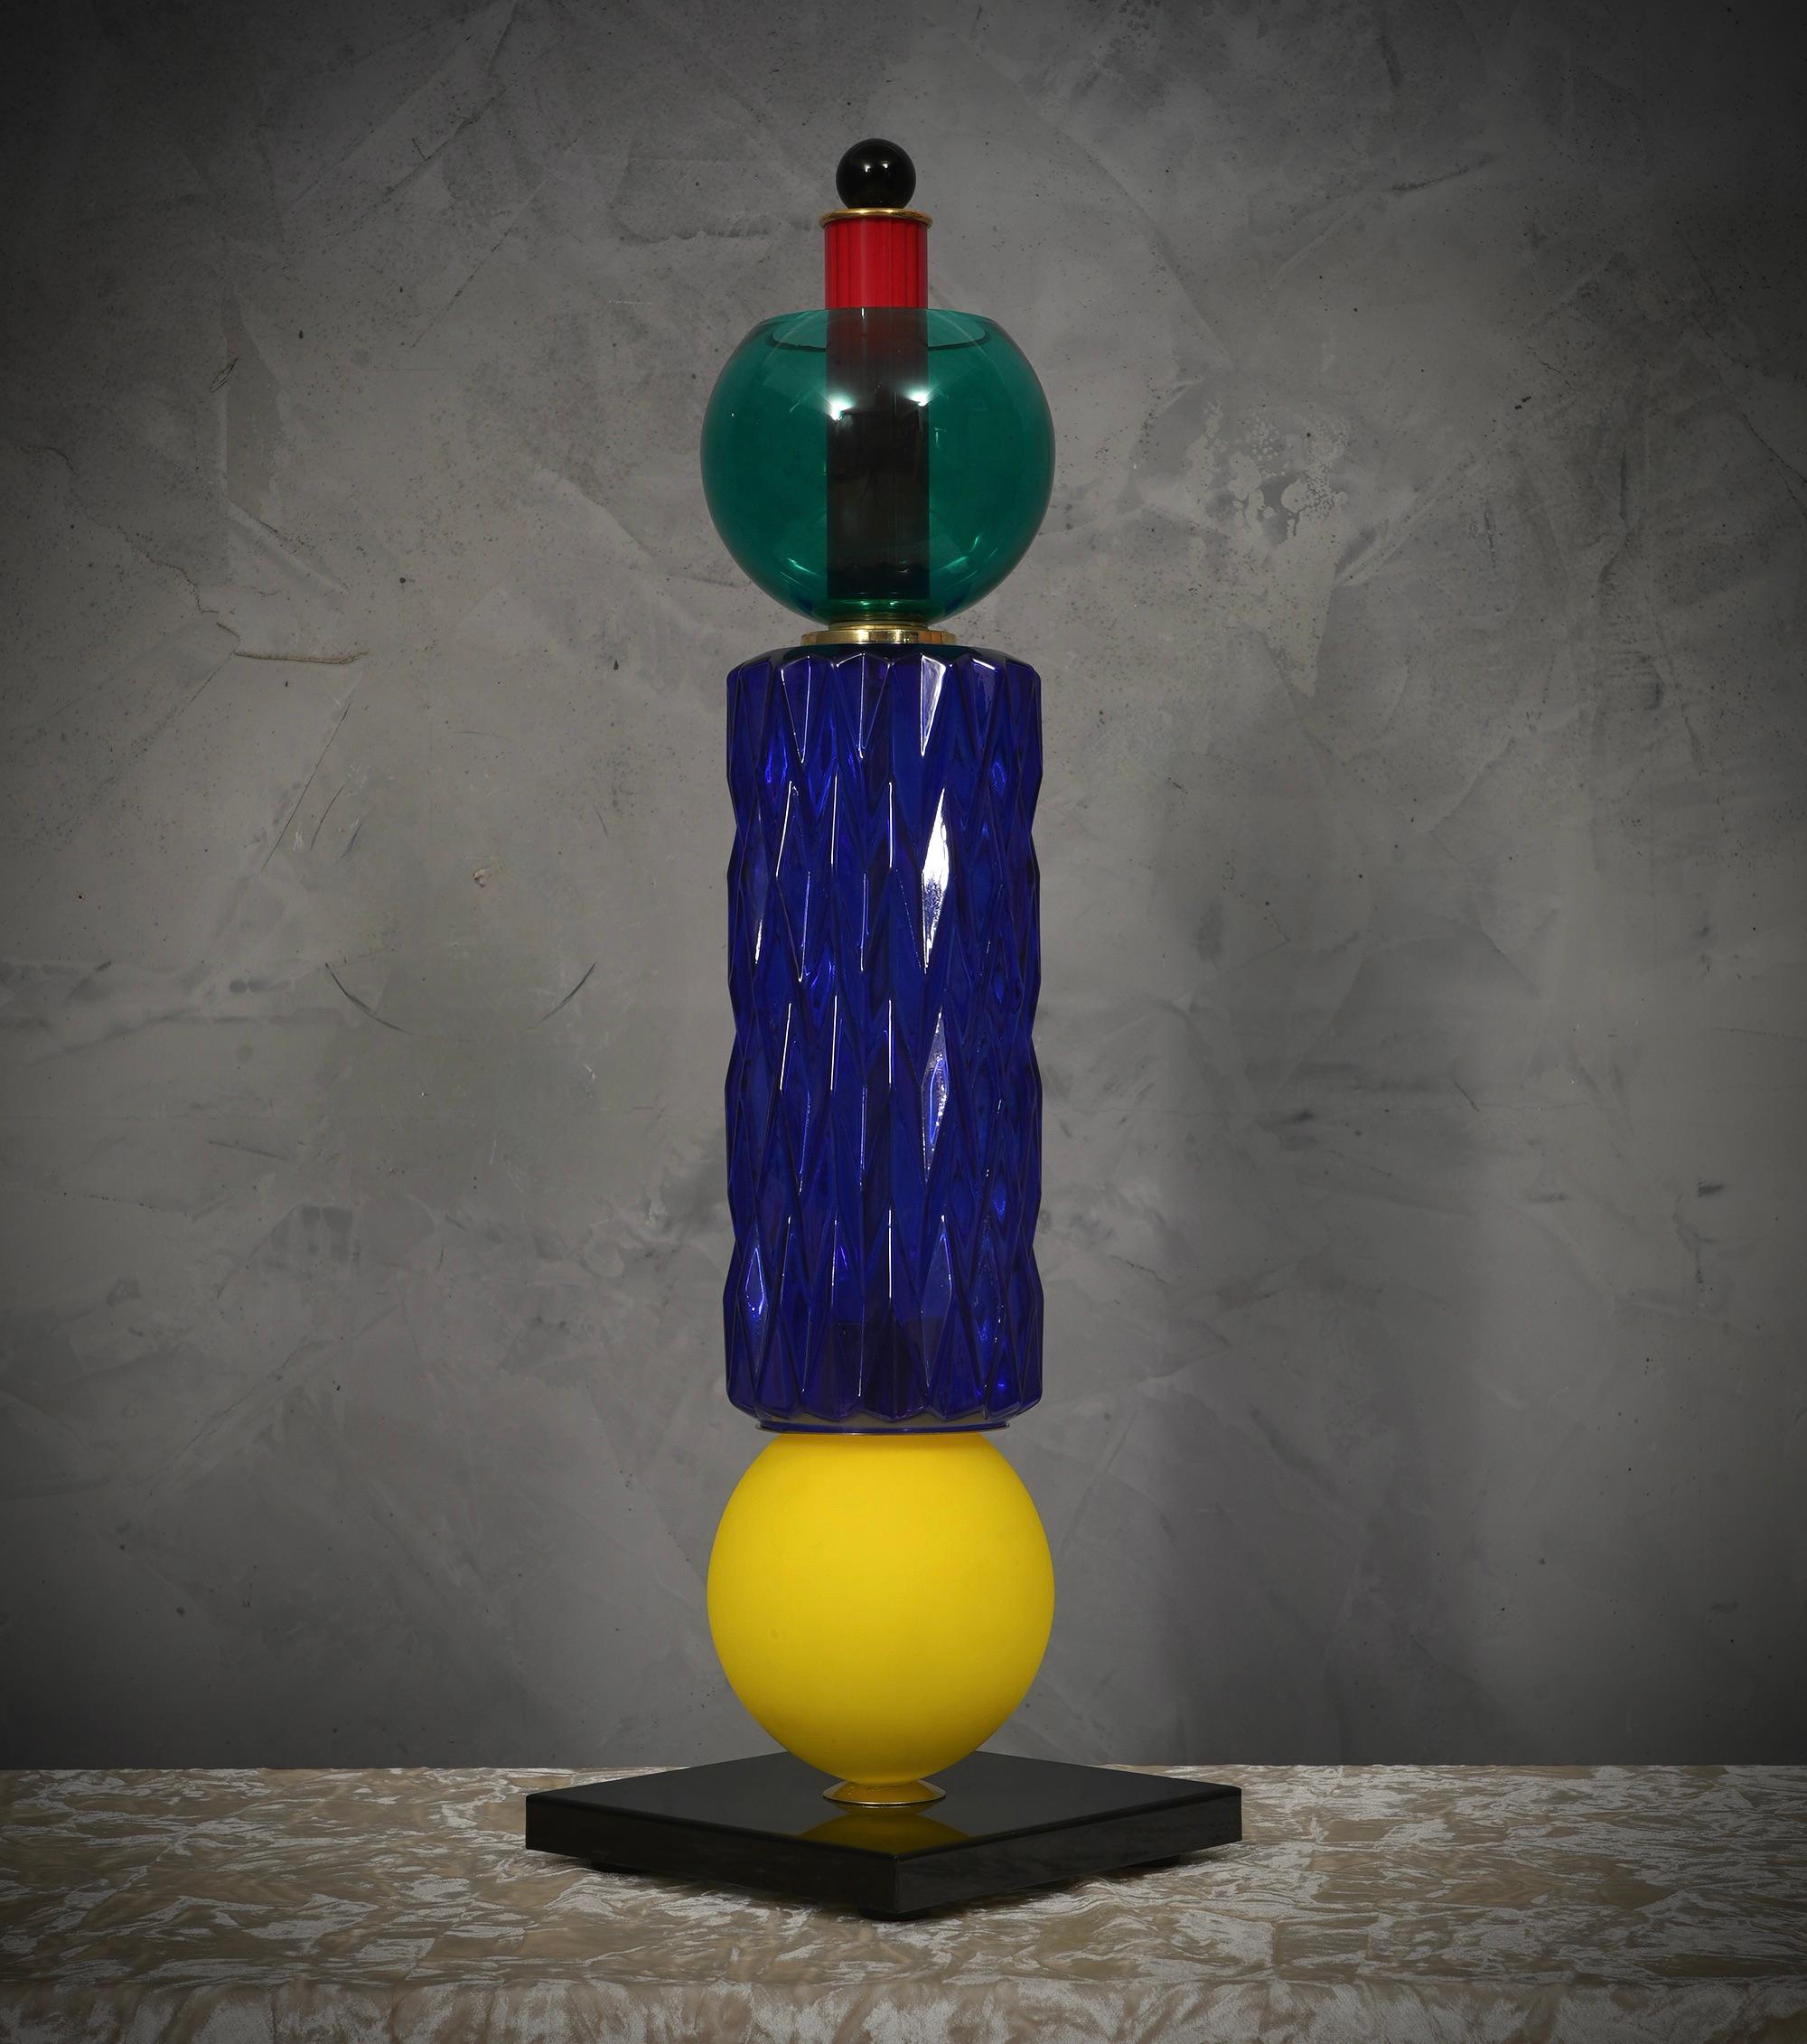 Kostbare und einzigartige mundgeblasene mehrfarbige Murano-Lampe, klassisches aber originelles Design mit einem starken Kontrast zwischen den Farben der verschiedenen Glasstücke.

Die Leuchte zeichnet sich durch ein elegantes, raffiniertes und